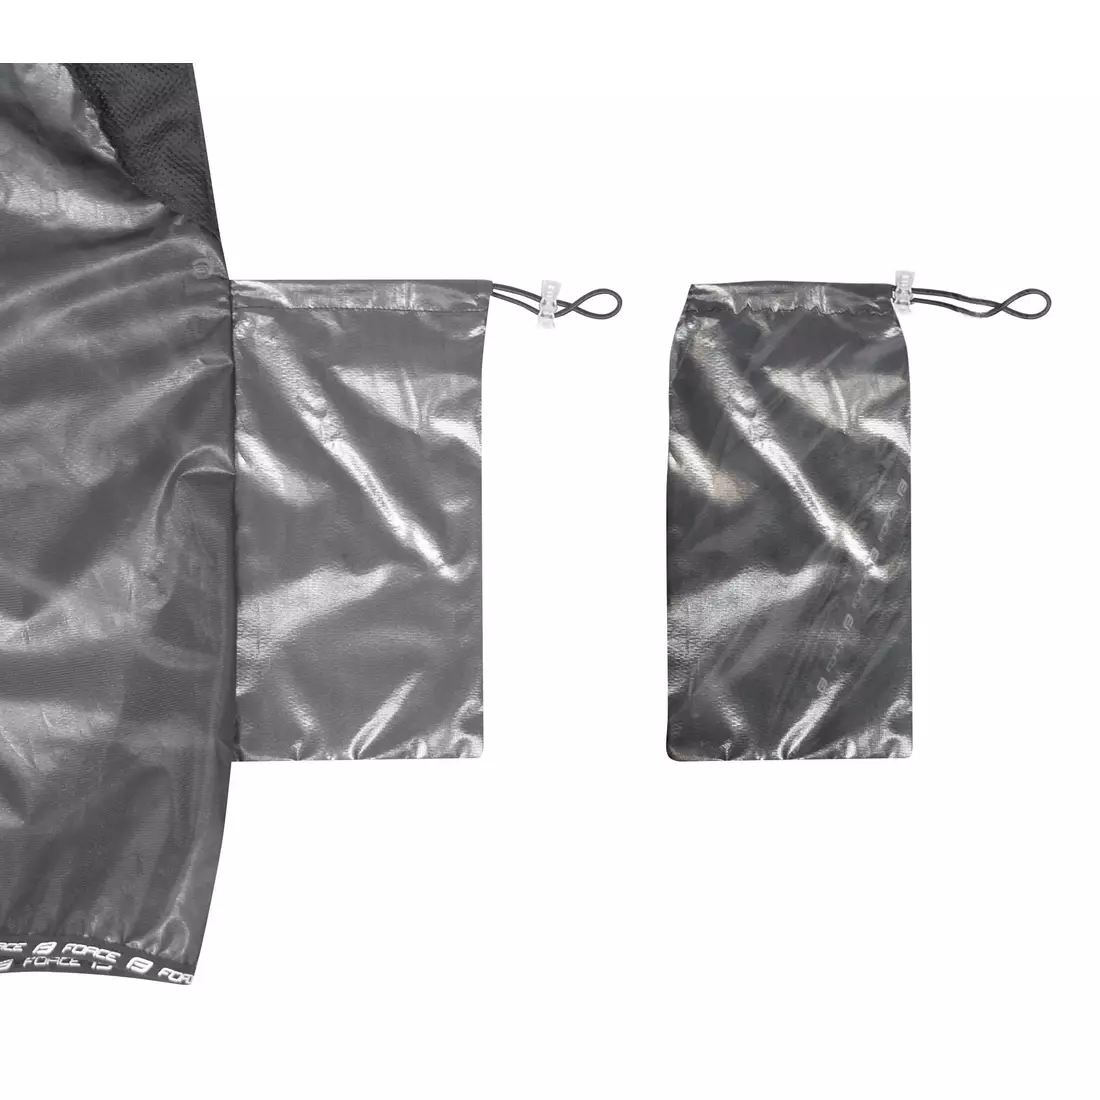 FORCE windbreaker jacket lightweight slim black 89998-L